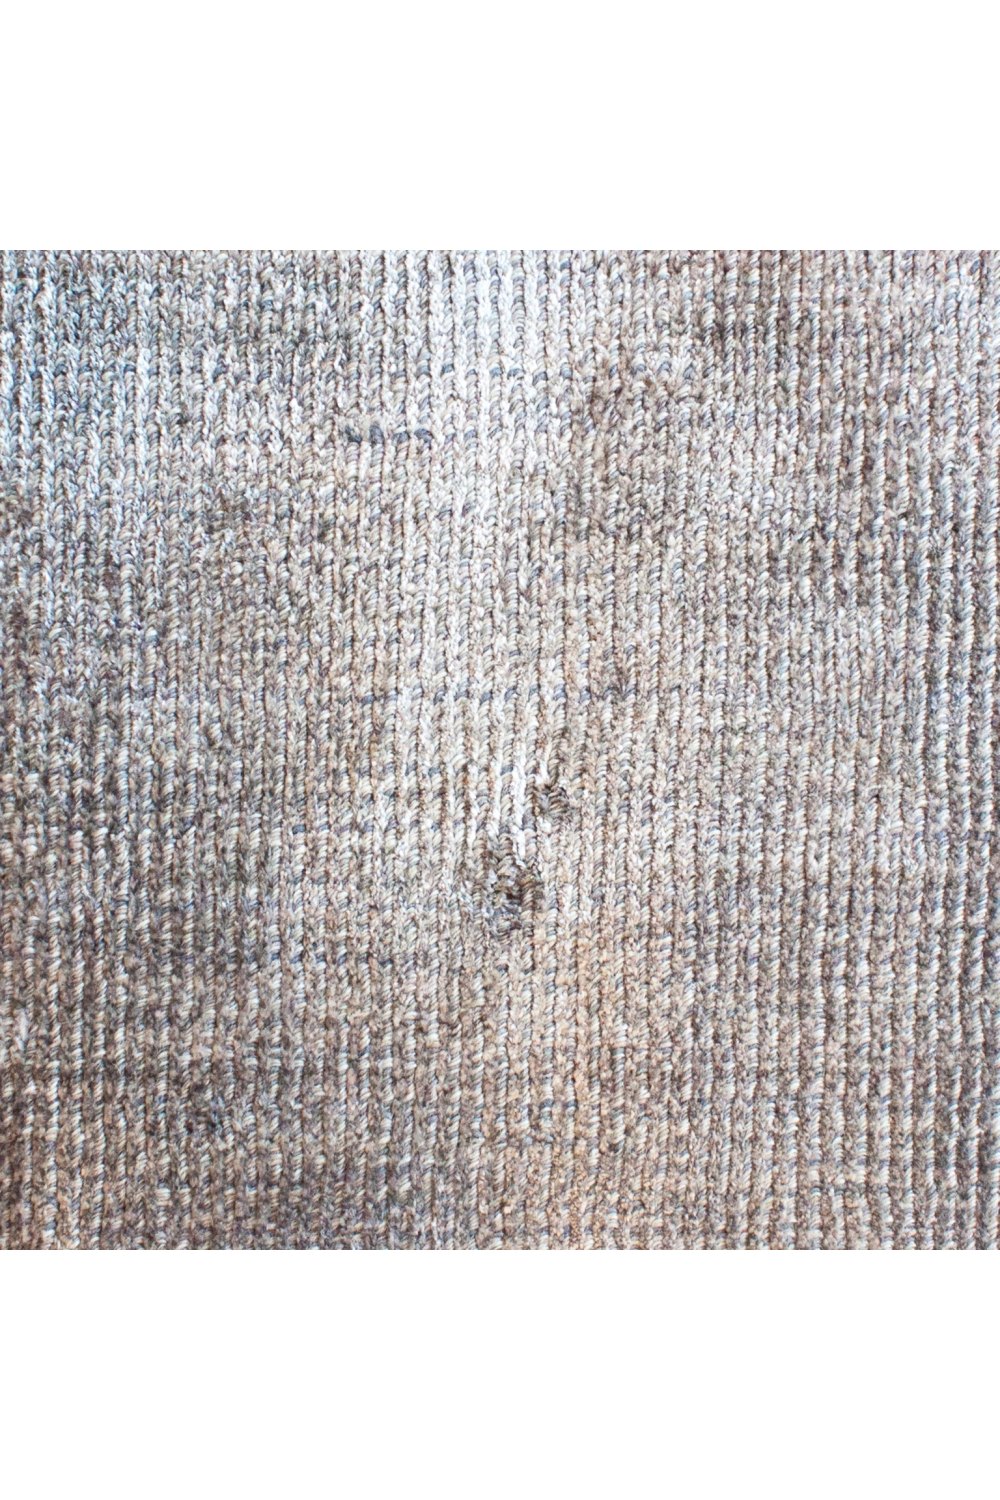 Handwoven Minimalist Carpet 7'x 7' | Dome Deco Amaze | Oroa.com